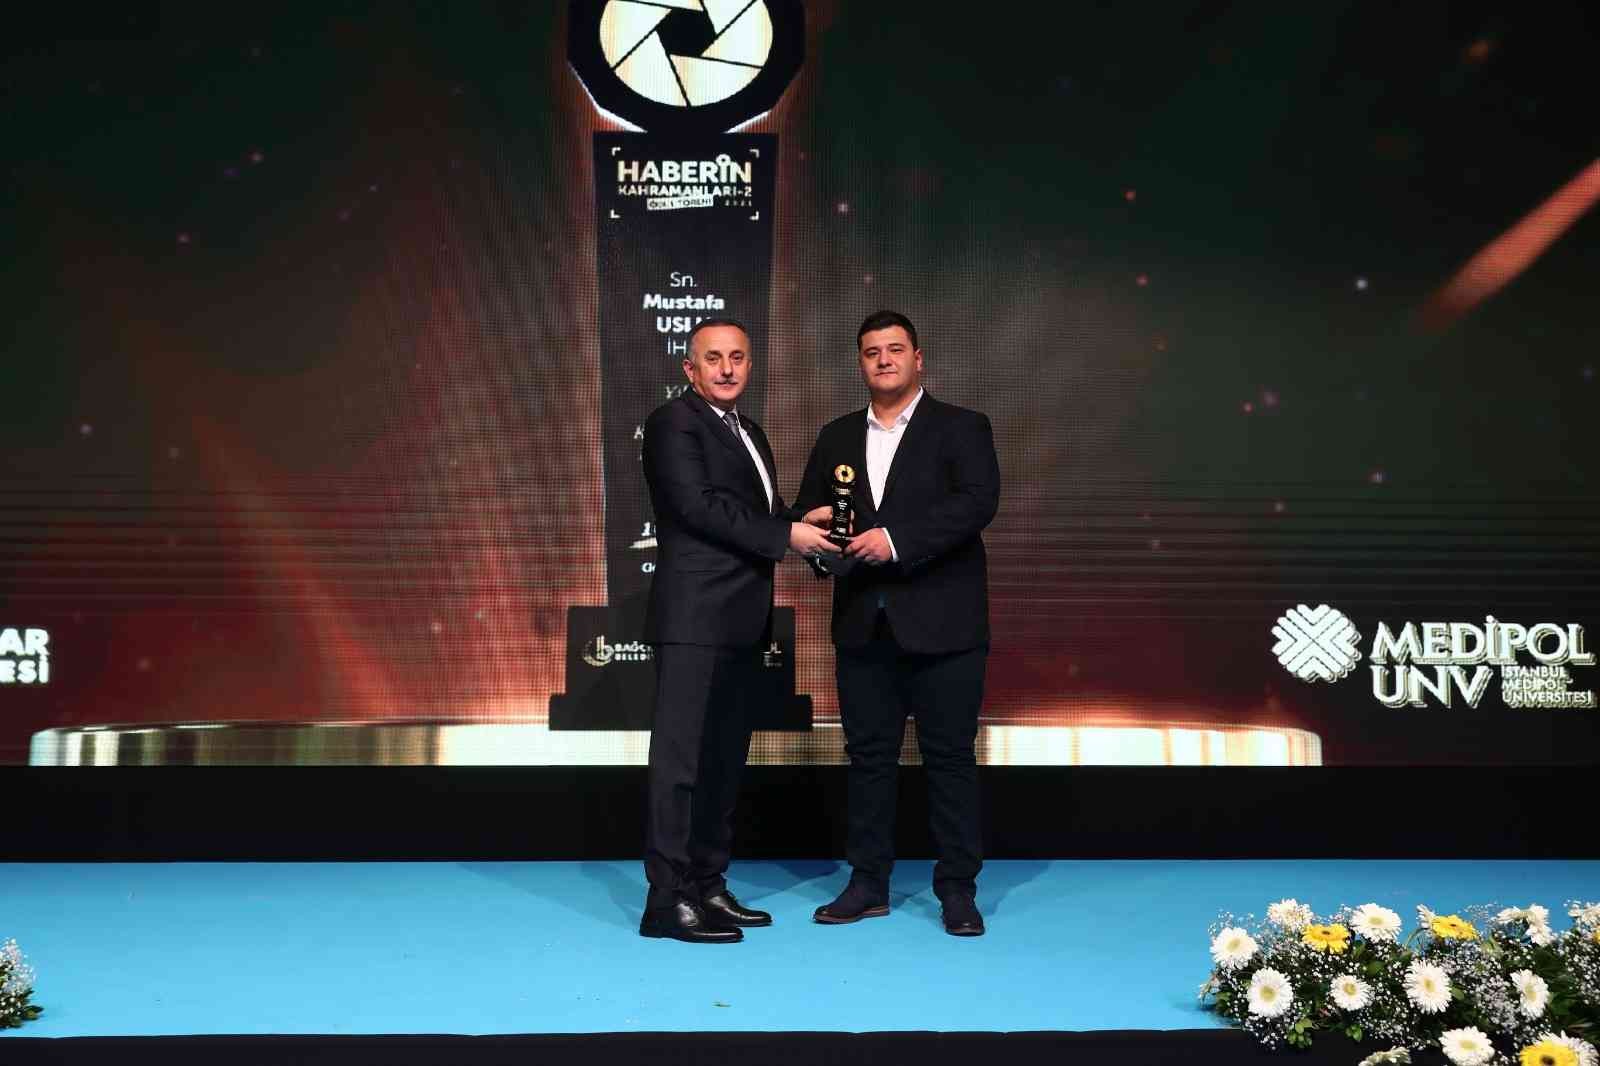 İHA Muhabiri Mustafa Uslu, ‘Yılın kahraman habercisi’ ödülüne layık görüldü #istanbul